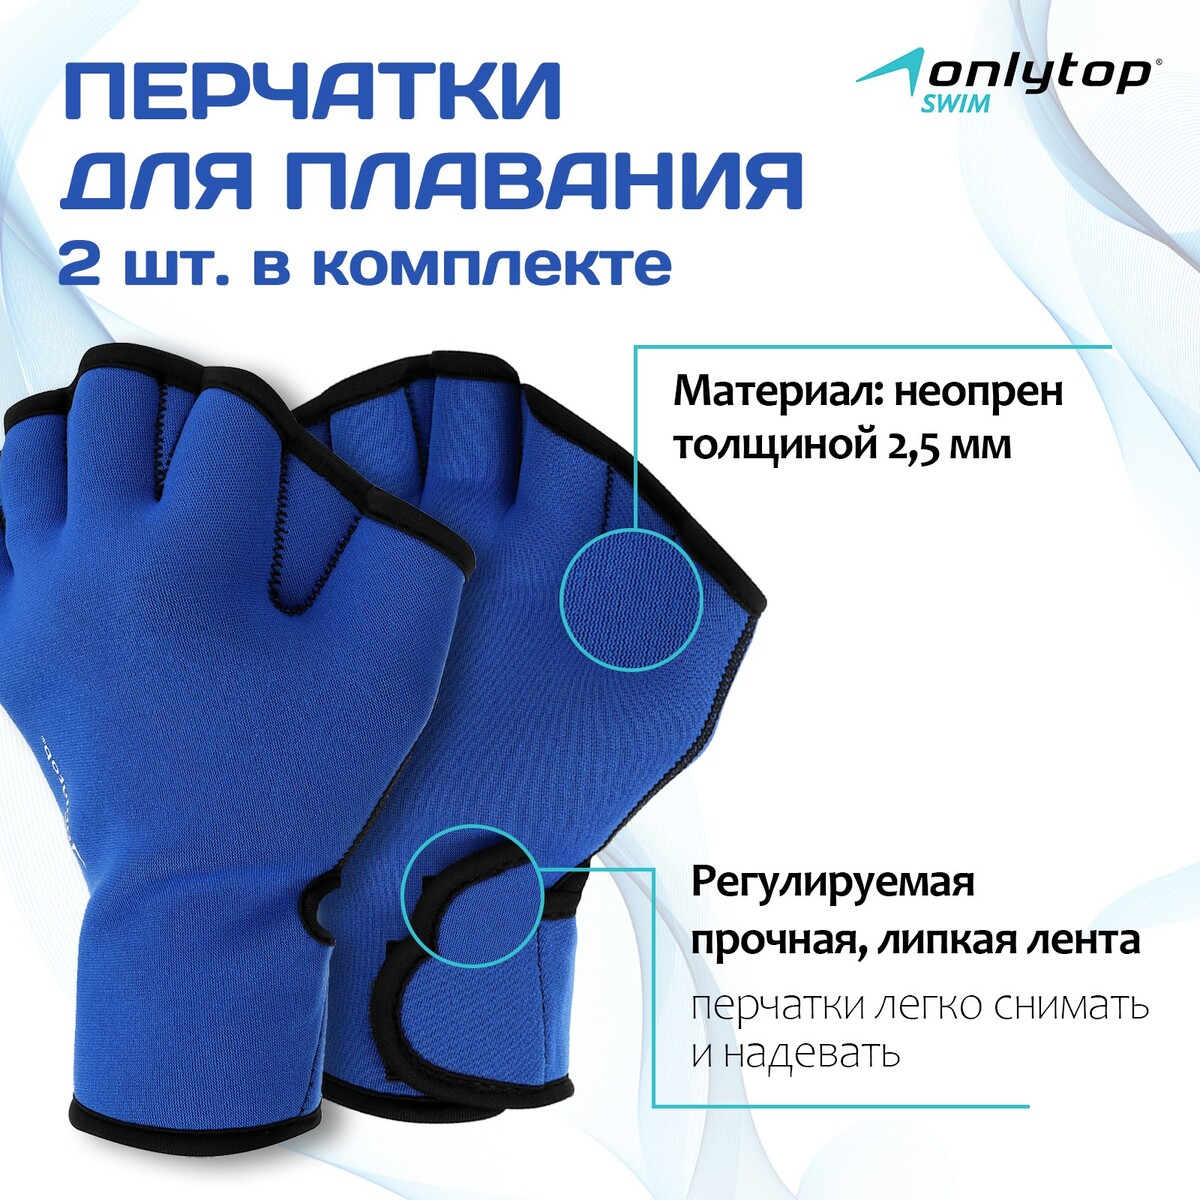 Перчатки для плавания onlytop, неопрен, 2.5 мм, р. s, цвет синий перчатки для плавания onlytop неопрен 2 5 мм р m